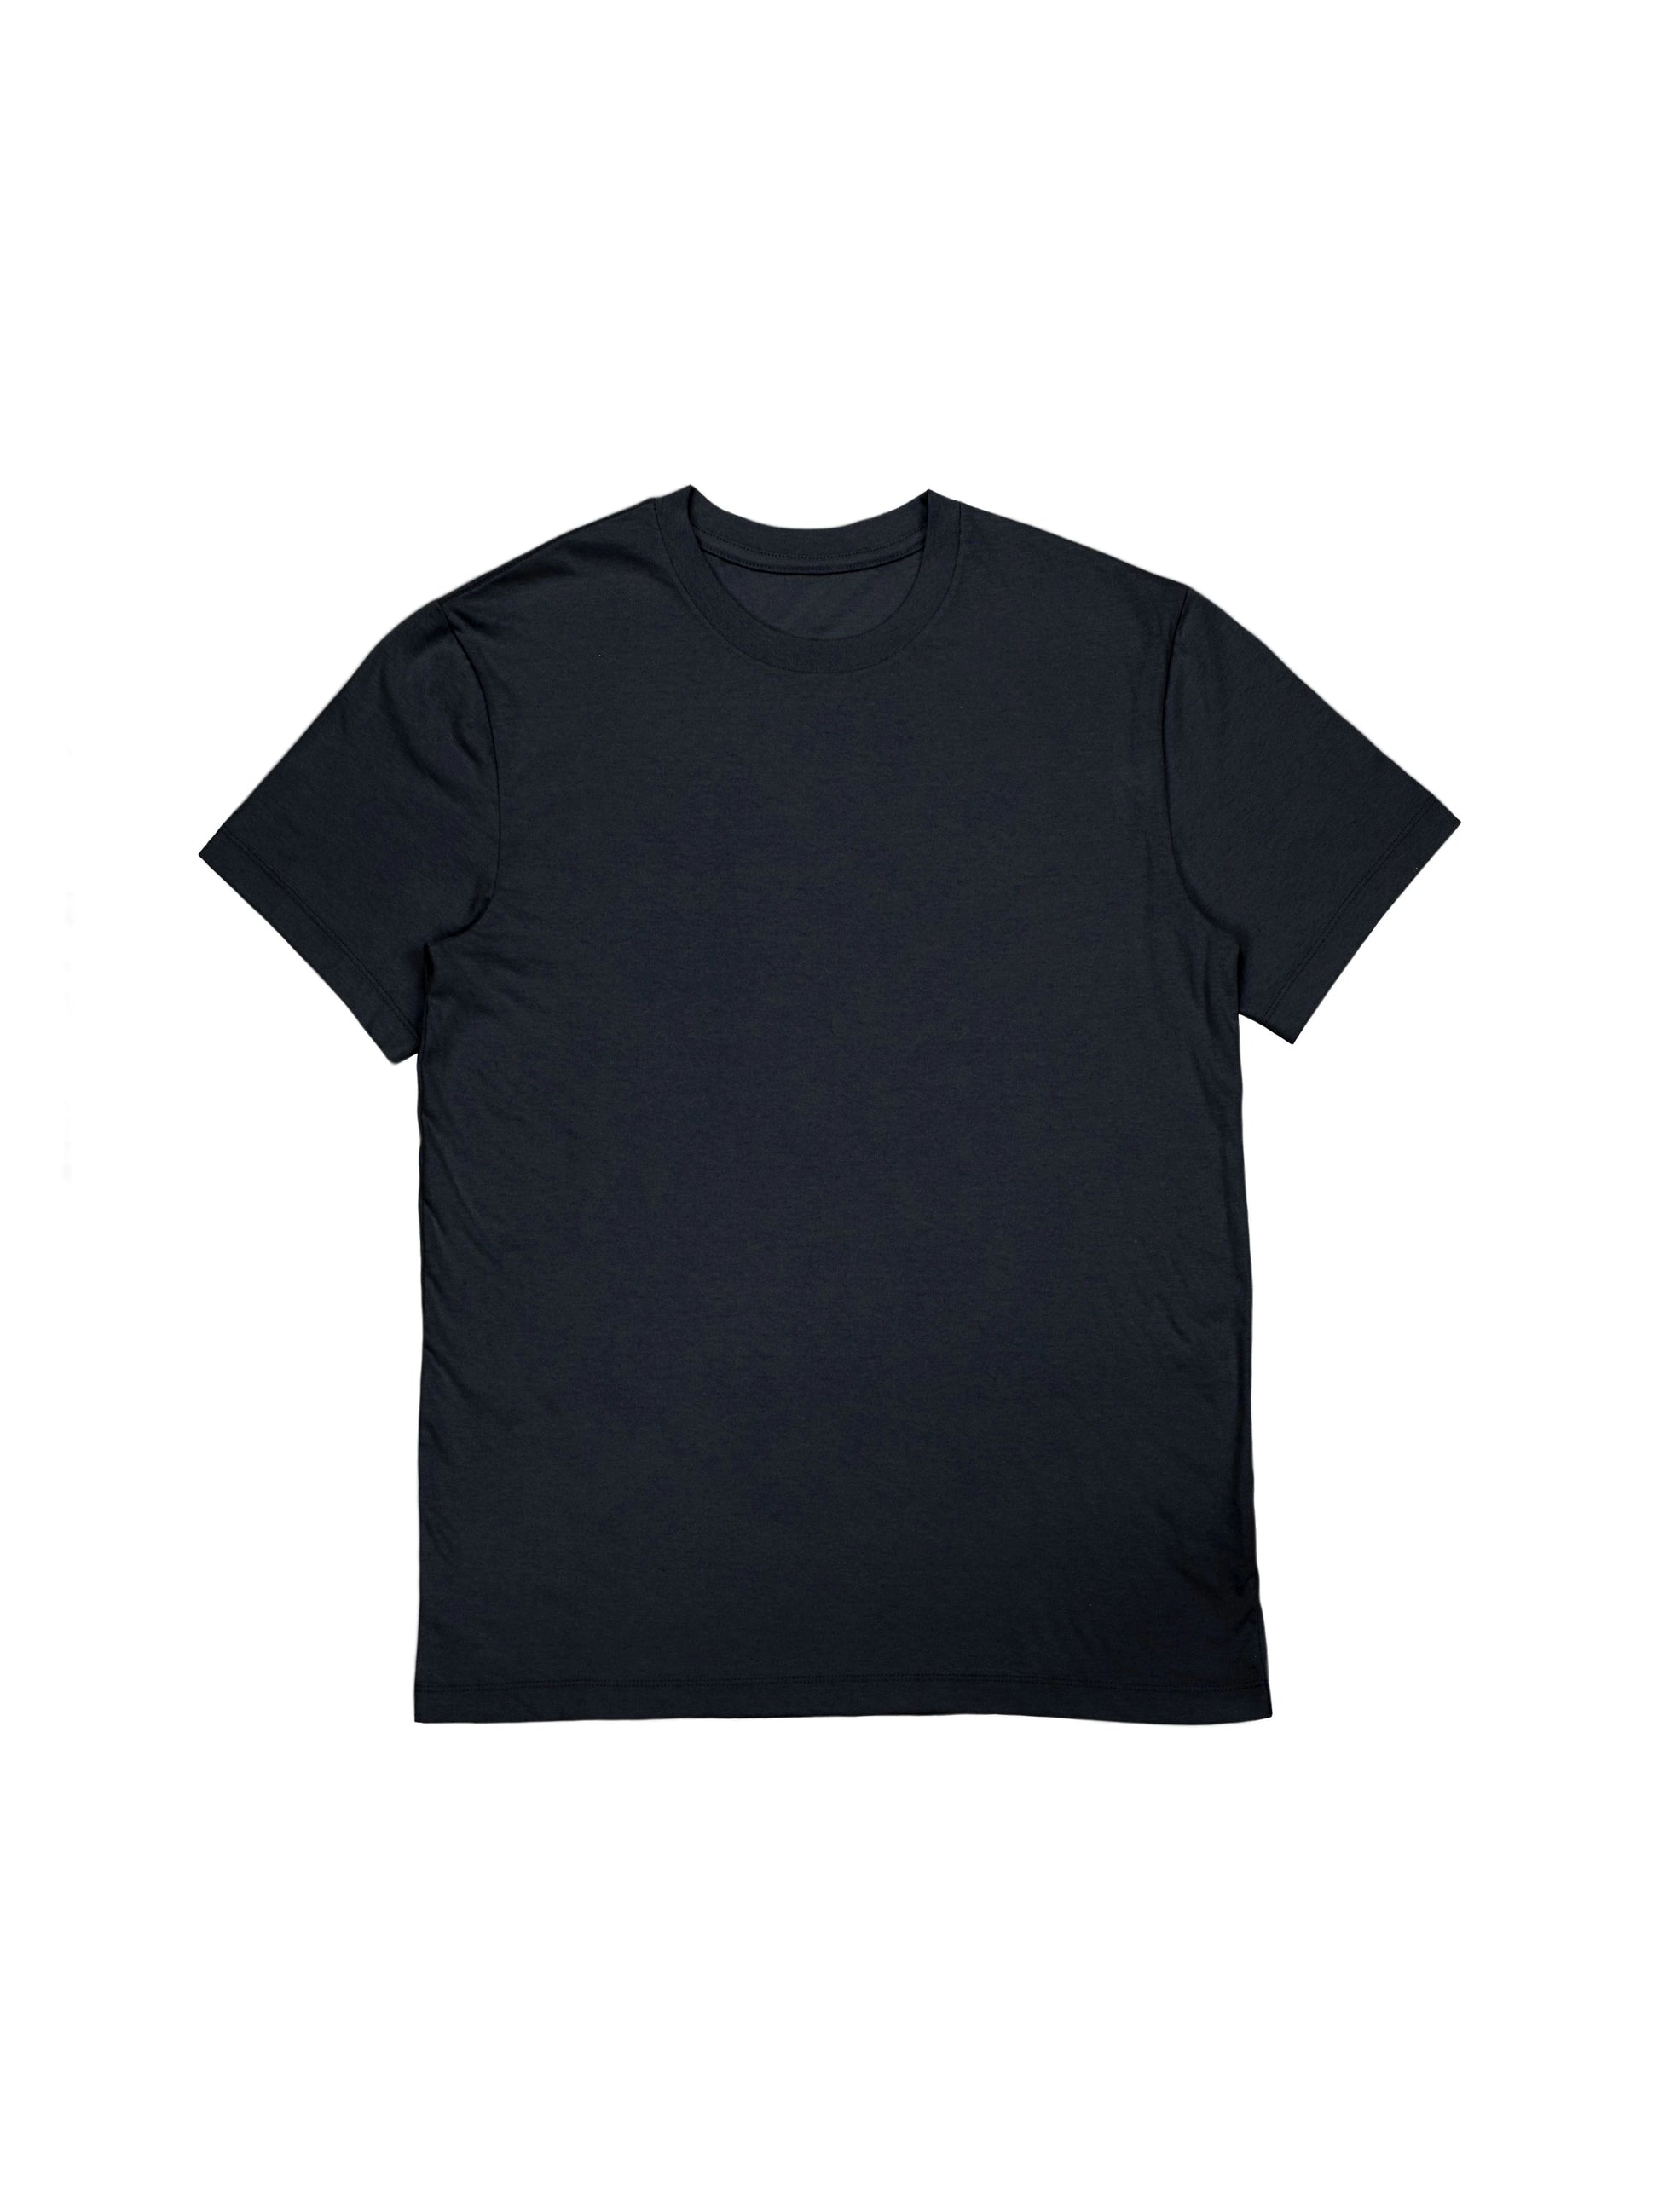 Basic plain T-shirt black